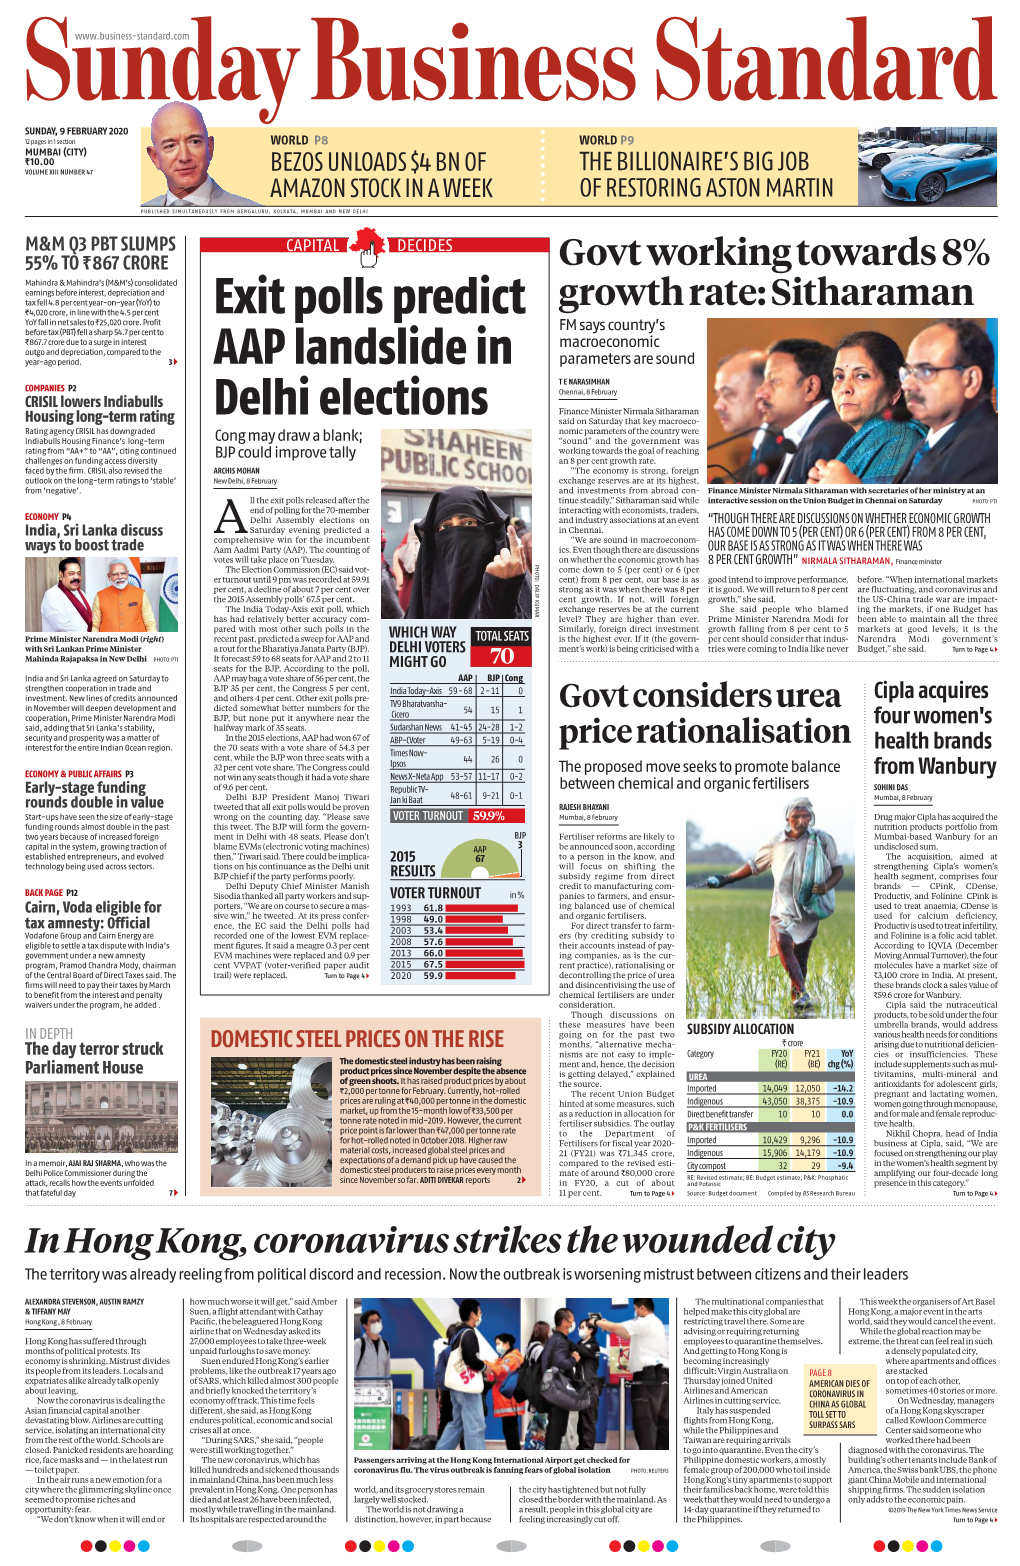 Exit Polls Predict AAP Landslide in Delhi Elections